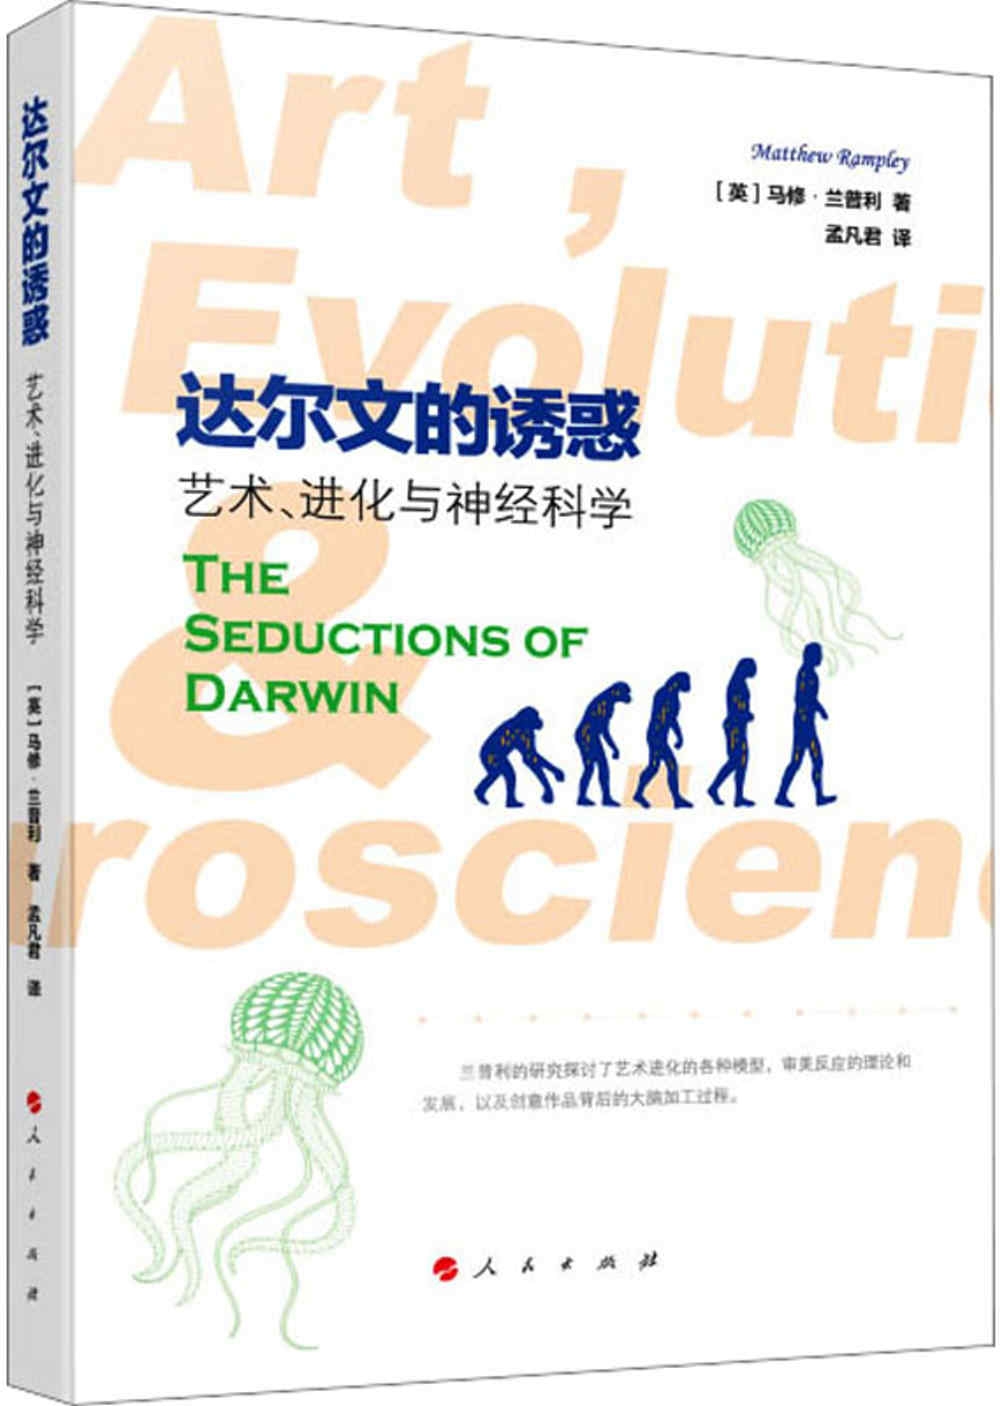 達爾文的誘惑：藝術、進化與神經科學